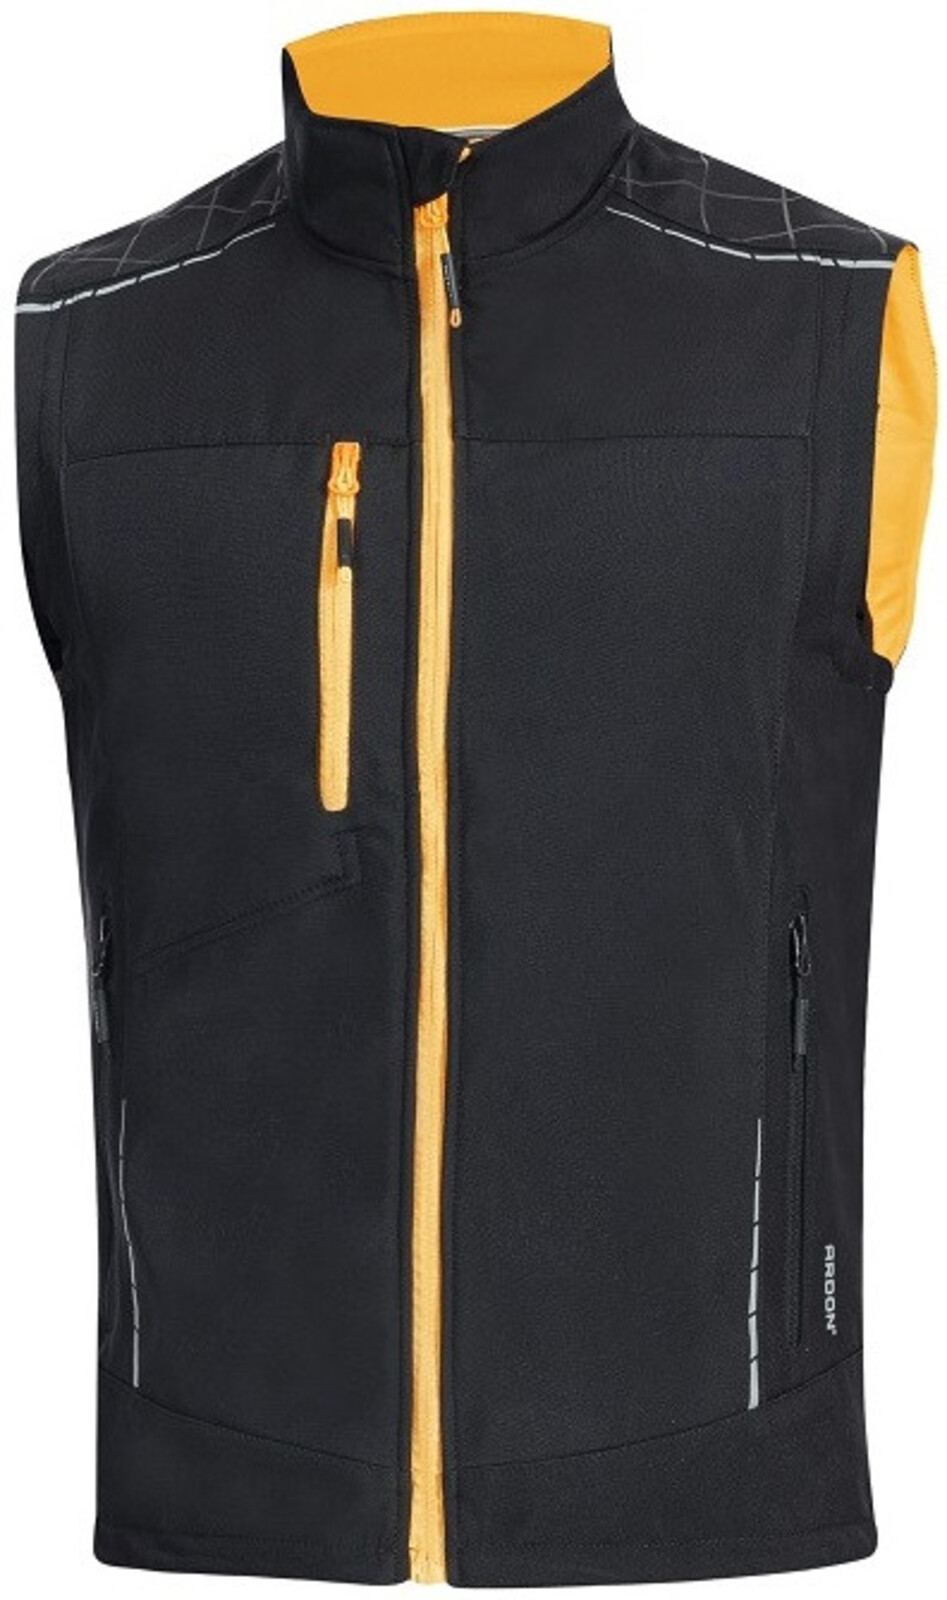 Pánska softshellová vesta Ardon Vision - veľkosť: S, farba: čierna/oranžová